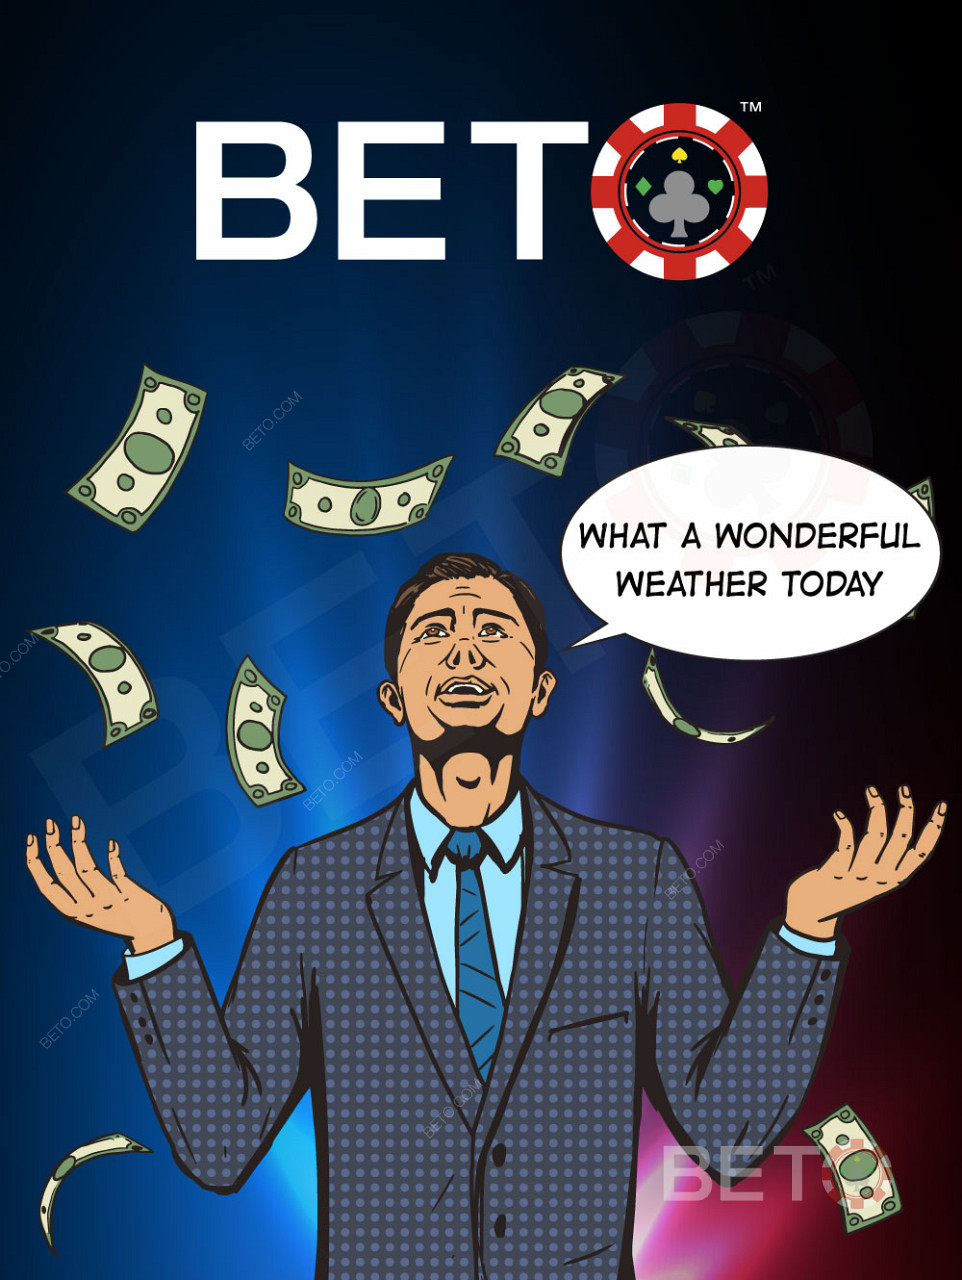 Η BETO θα κάνει βροχή με τα καλύτερα μπόνους καζίνο!